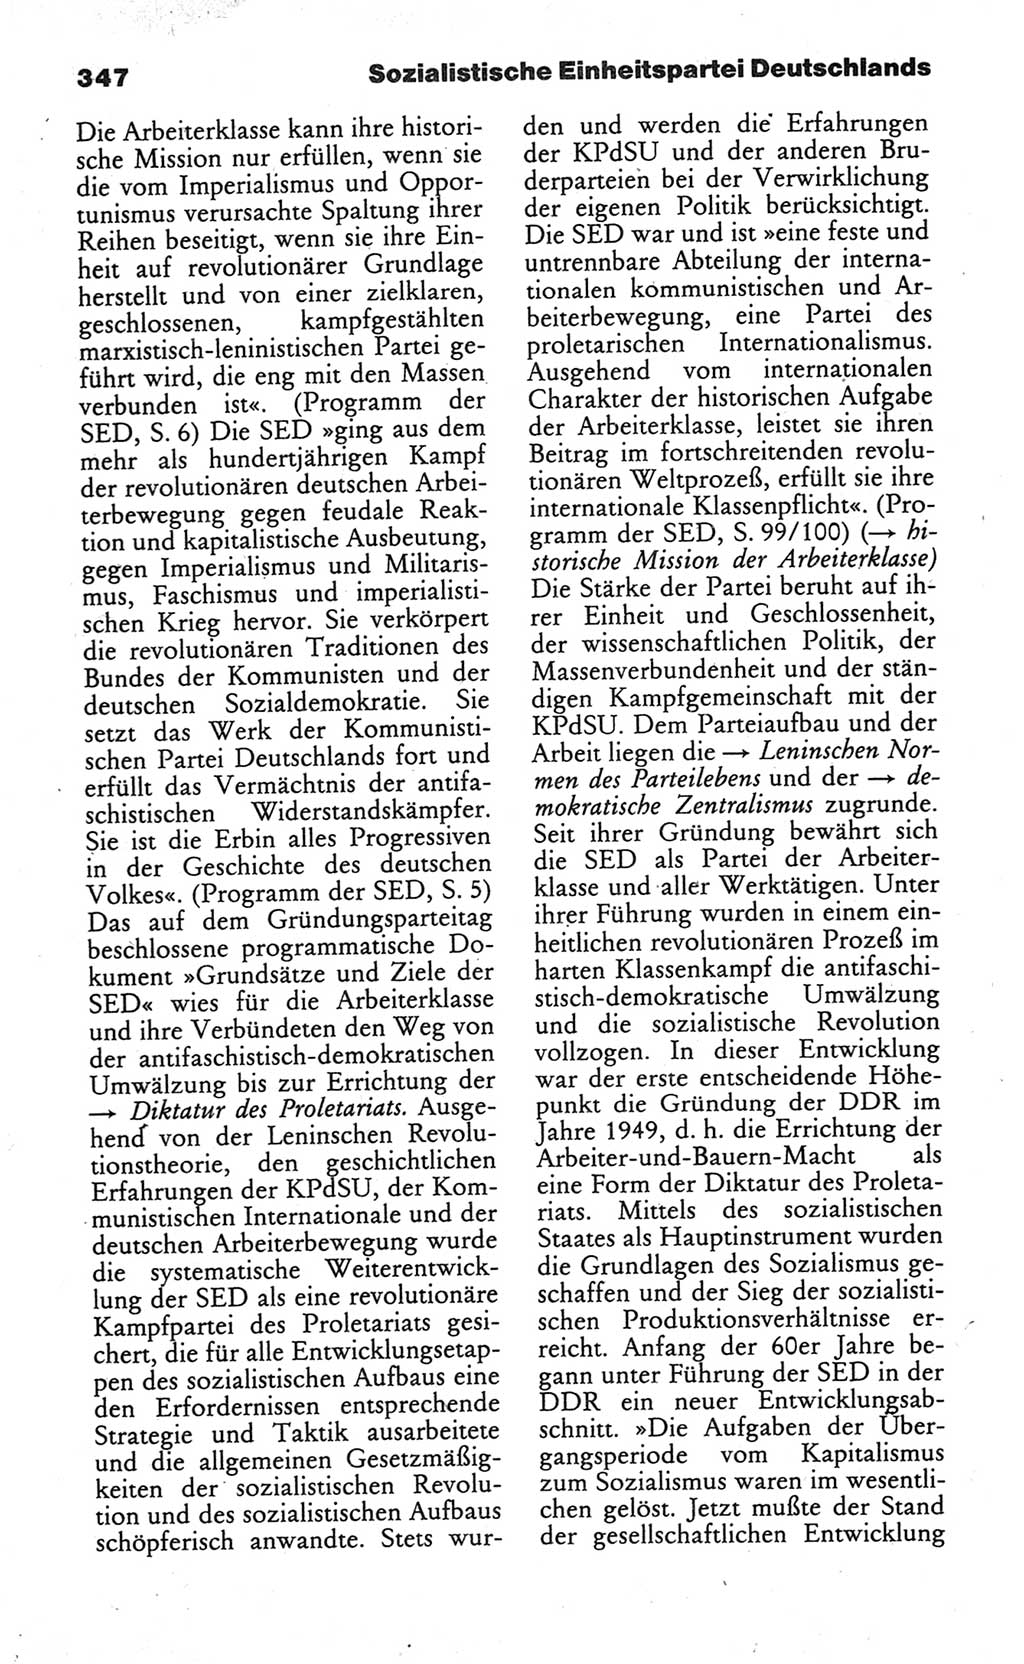 Wörterbuch des wissenschaftlichen Kommunismus [Deutsche Demokratische Republik (DDR)] 1984, Seite 347 (Wb. wiss. Komm. DDR 1984, S. 347)